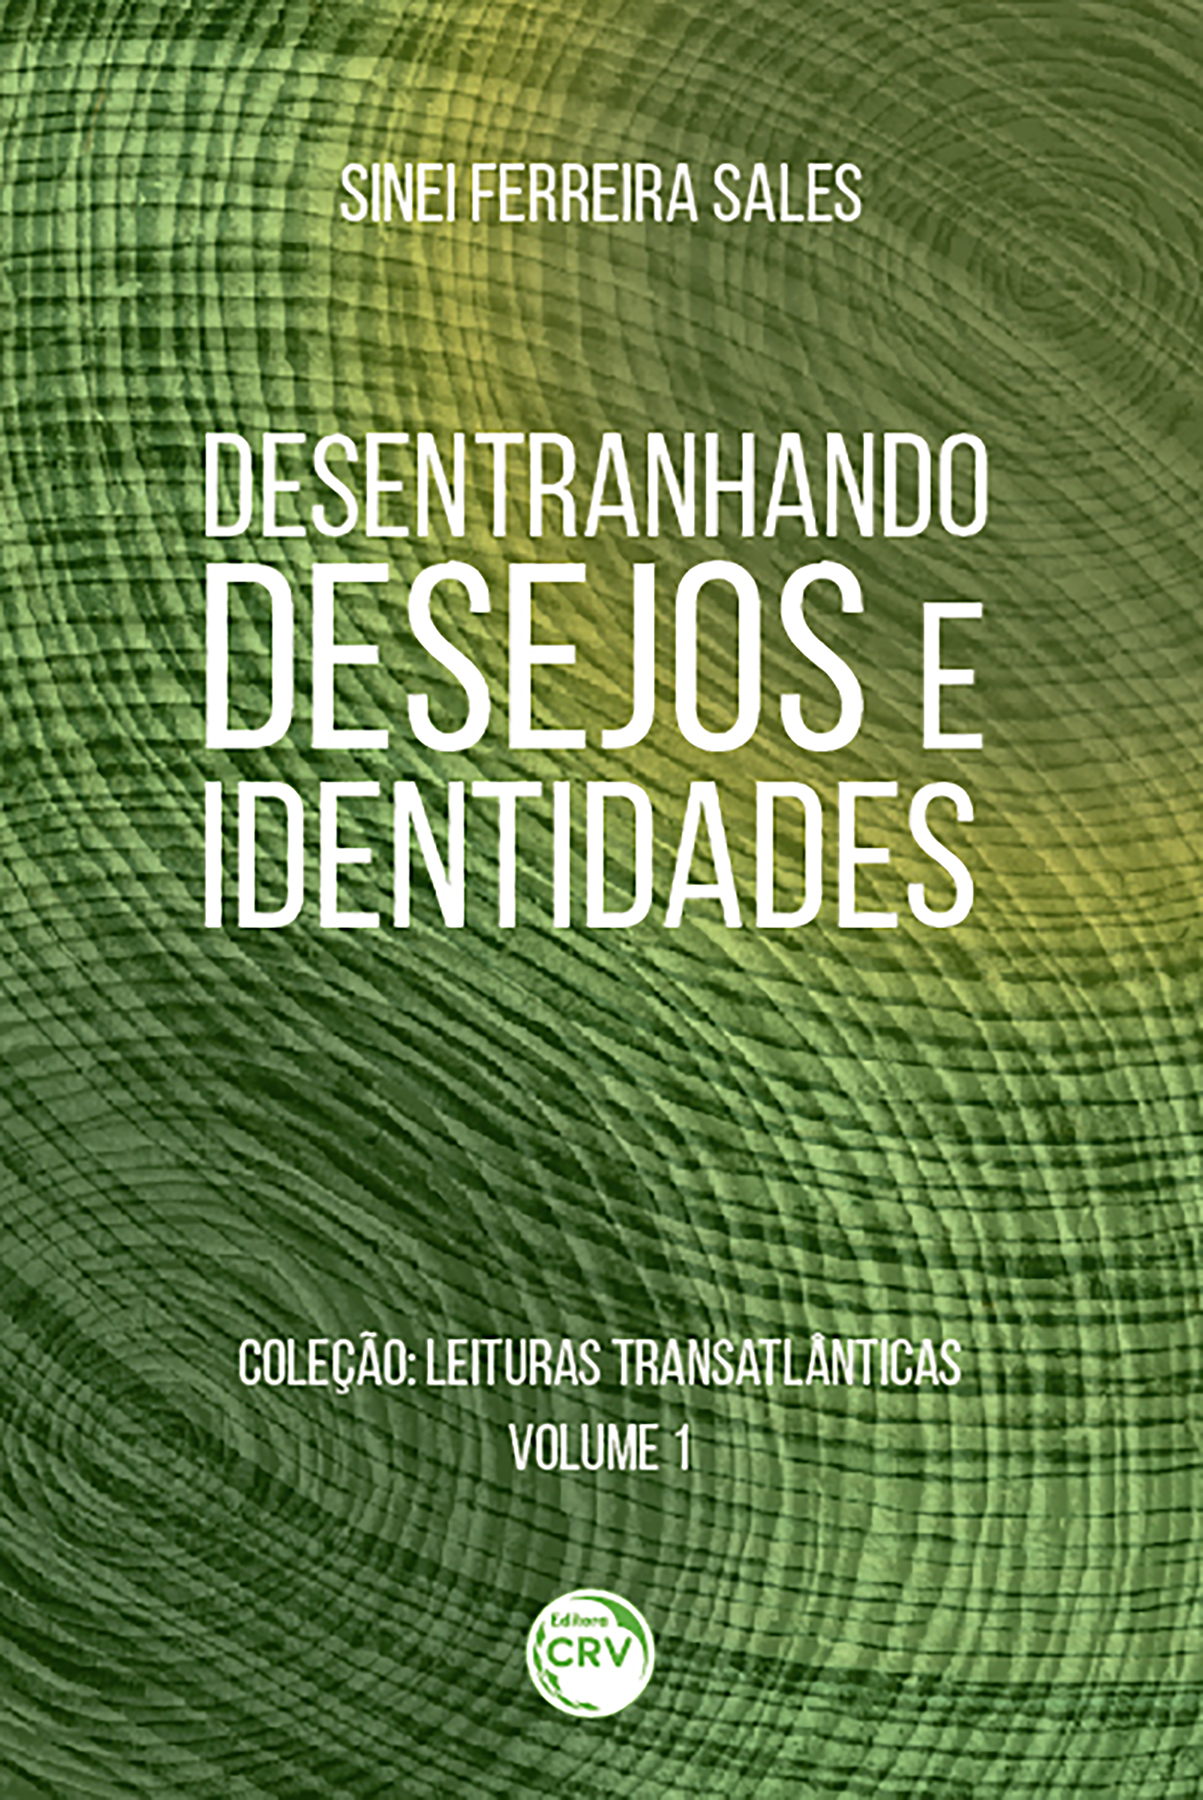 Capa do livro: DESENTRANHANDO DESEJOS E IDENTIDADES <br>Coleção: Leituras Transatlânticas <br>Volume 1